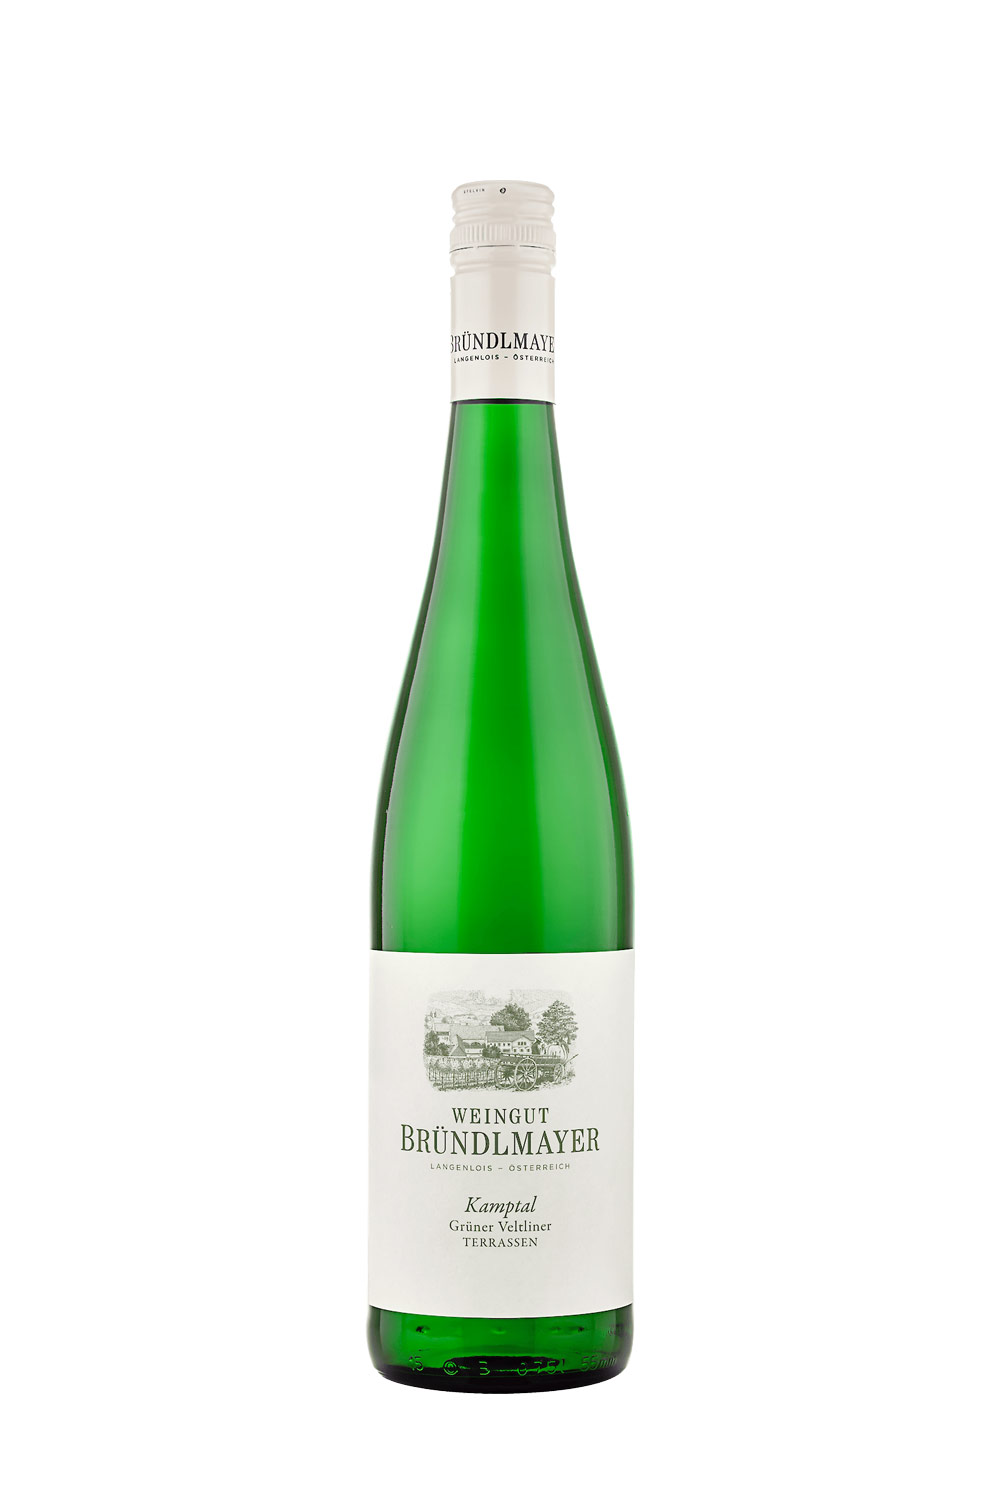 Online - Senti Veltliner Weingut Italien Grüner aus Bründlmayer | Weine 2022 Kamptal bei Terrassen kaufen Vini